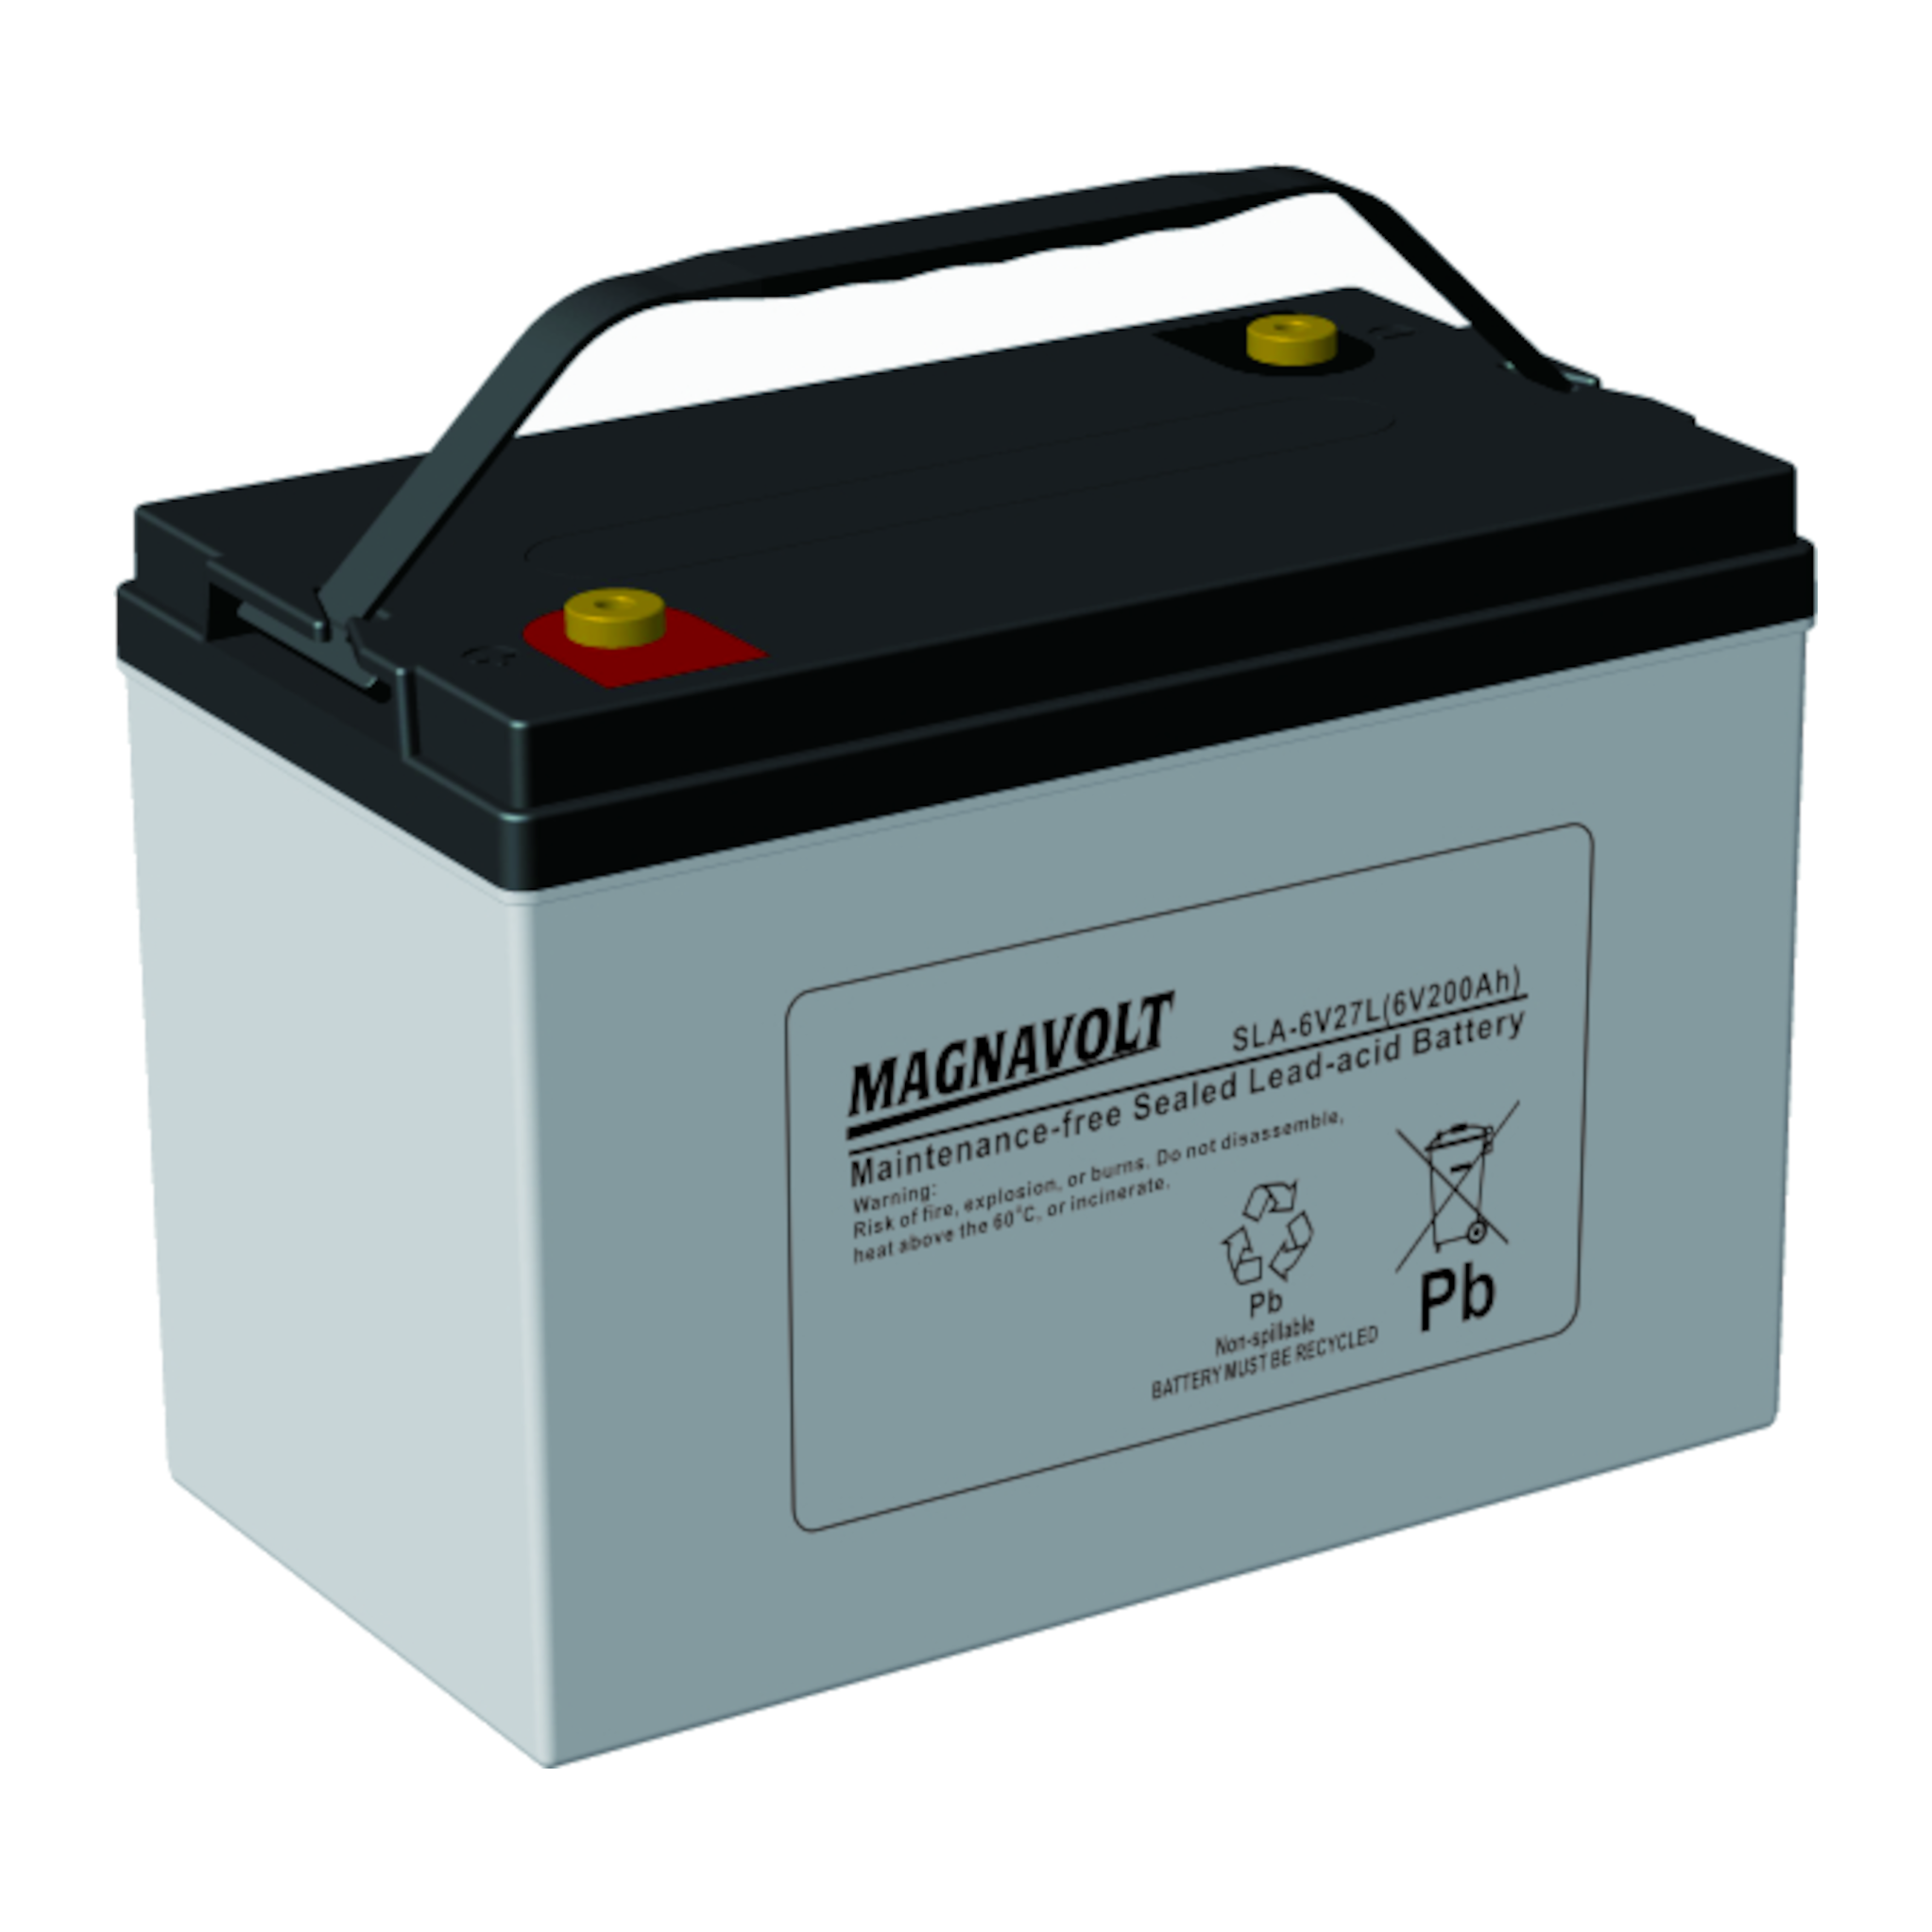 Magnavolt SLA-6V27L 6V 210 Ah Sealed Lead Acid Battery